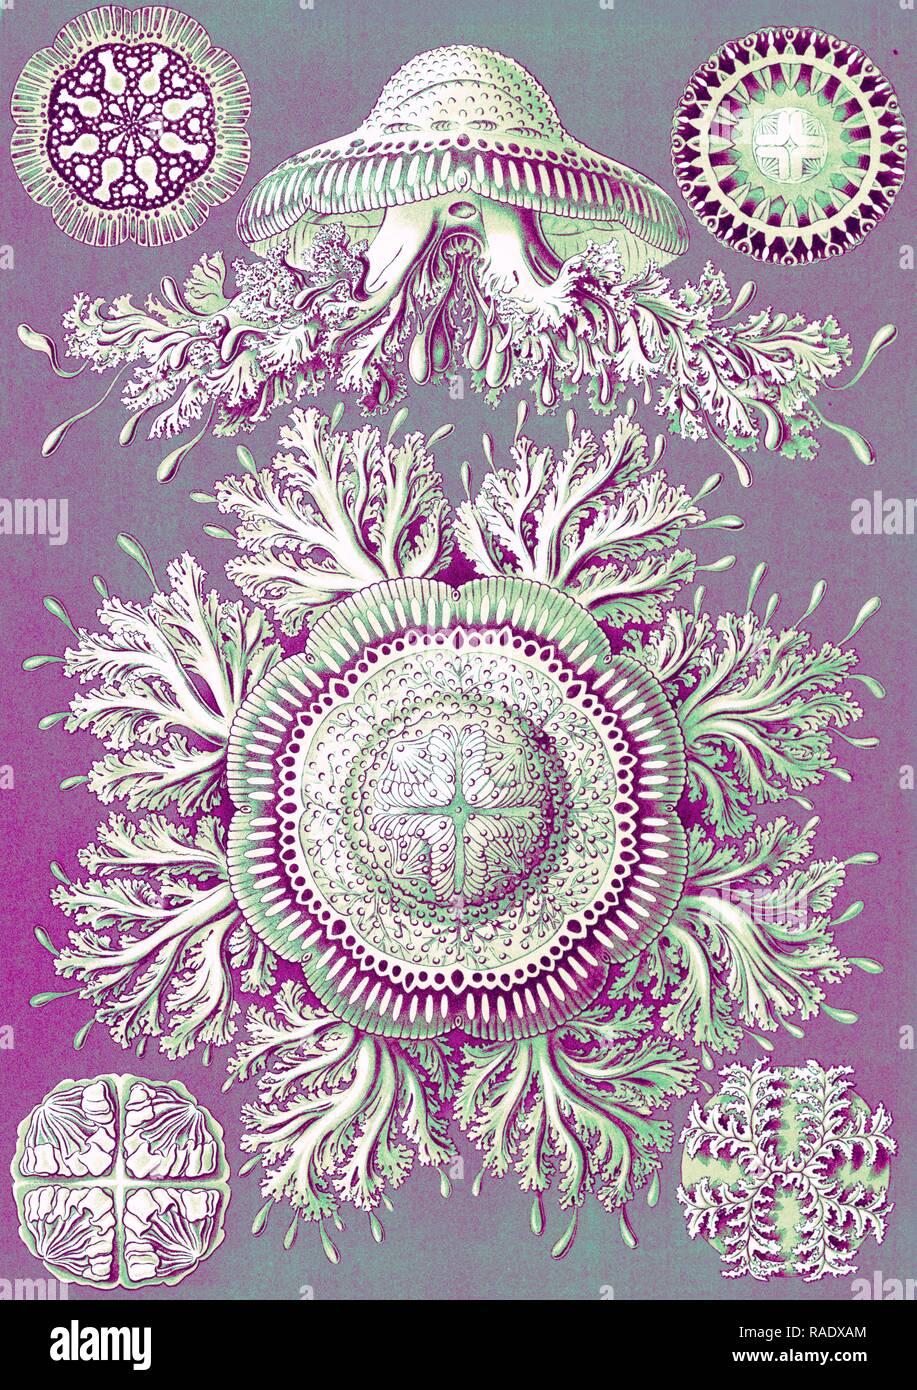 Illustrazione che mostra sei viste di meduse. Discomedusae. - Scheibenquallen, 1 stampa : Litografia, colore , foglio 36 reinventato Foto Stock